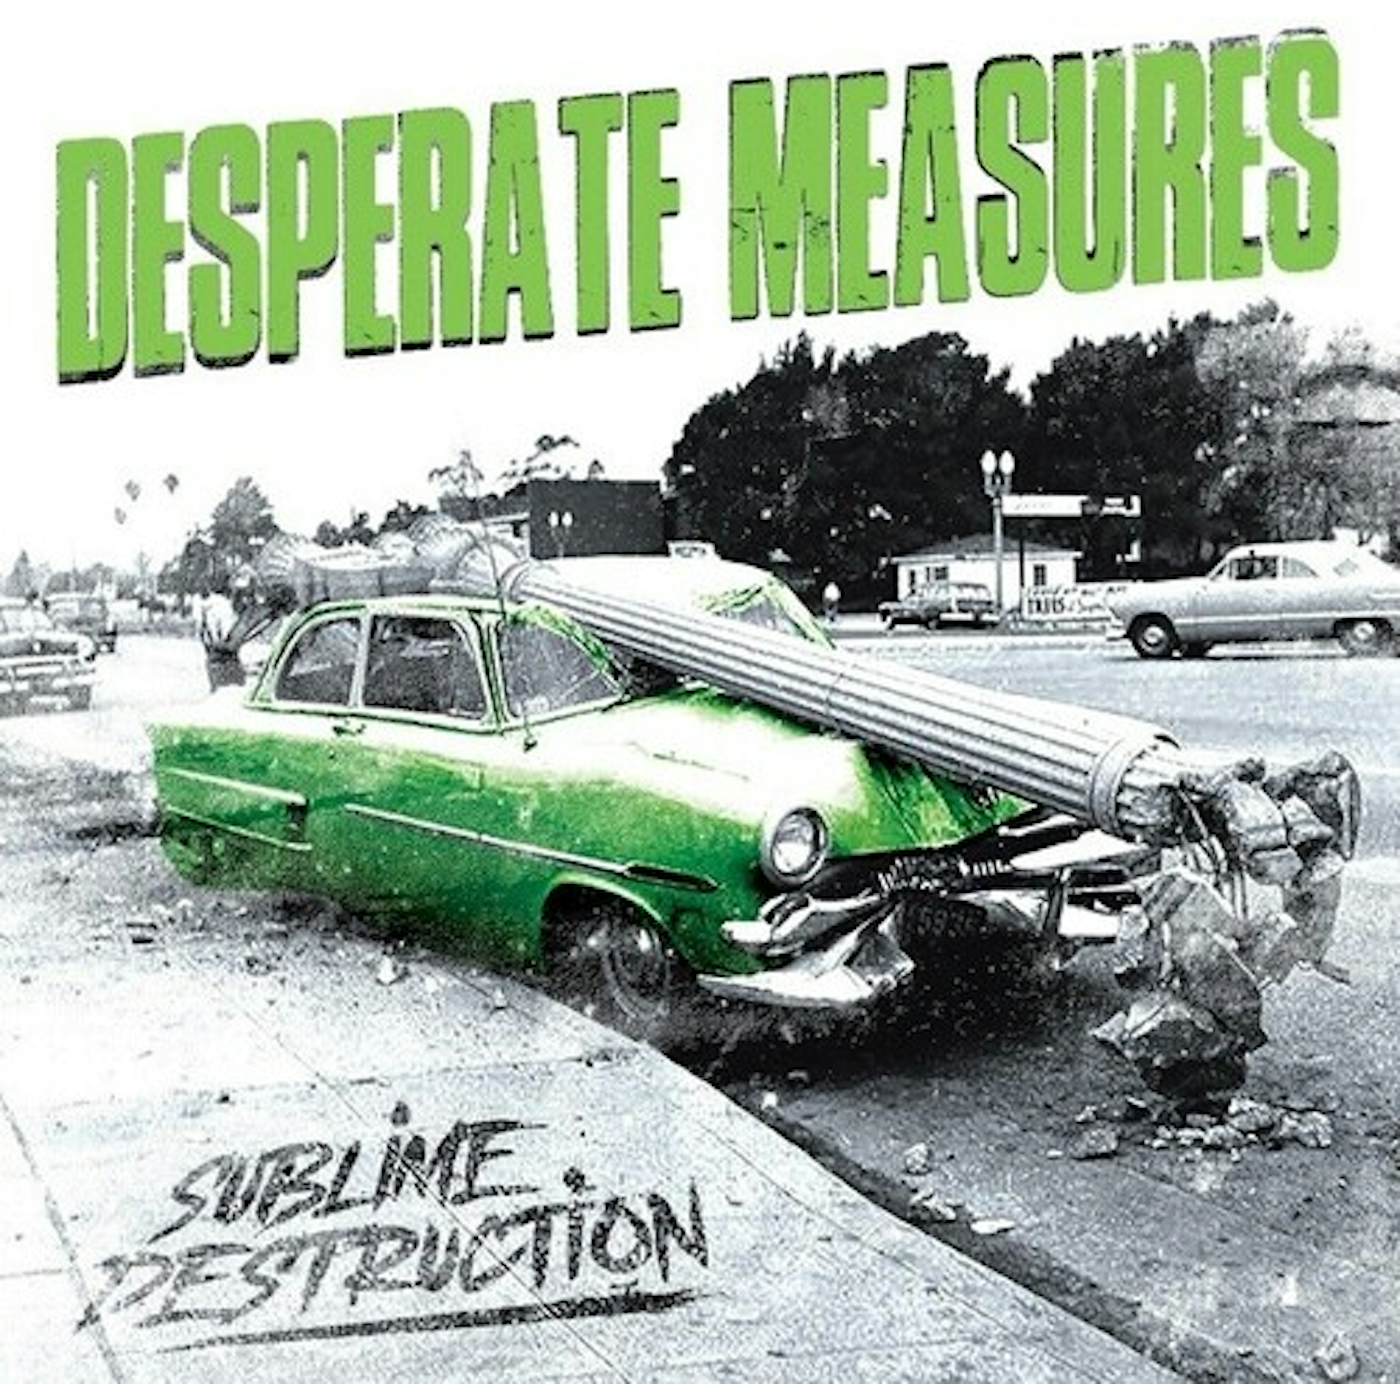 Desperate Measures Sublime Destruction Vinyl Record